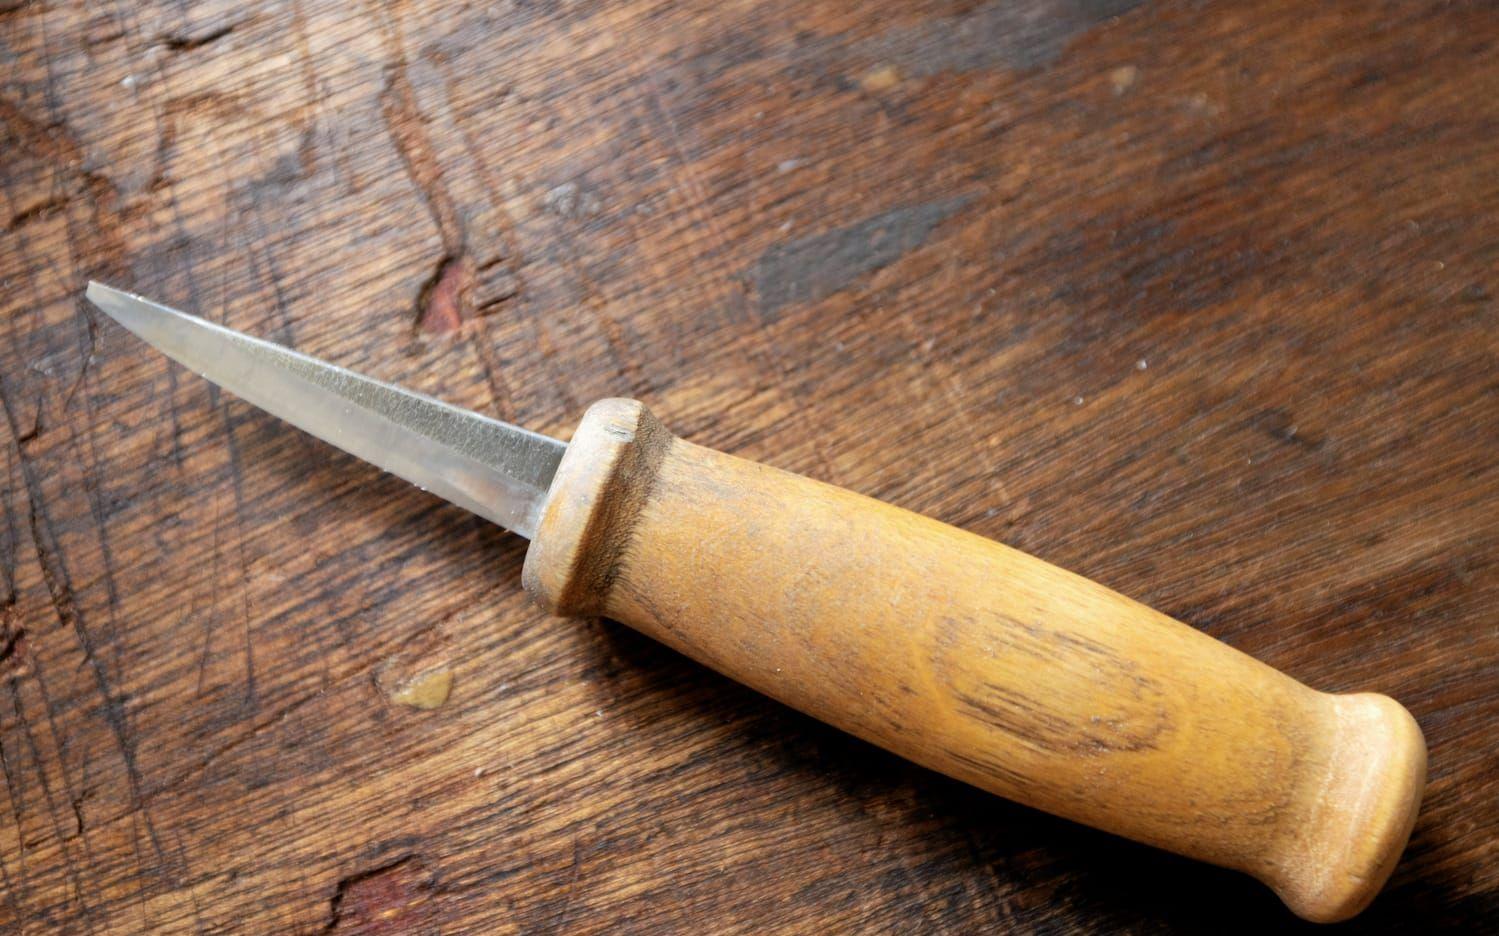 Den här Morakniven hör till favoriterna i verktygsstället.